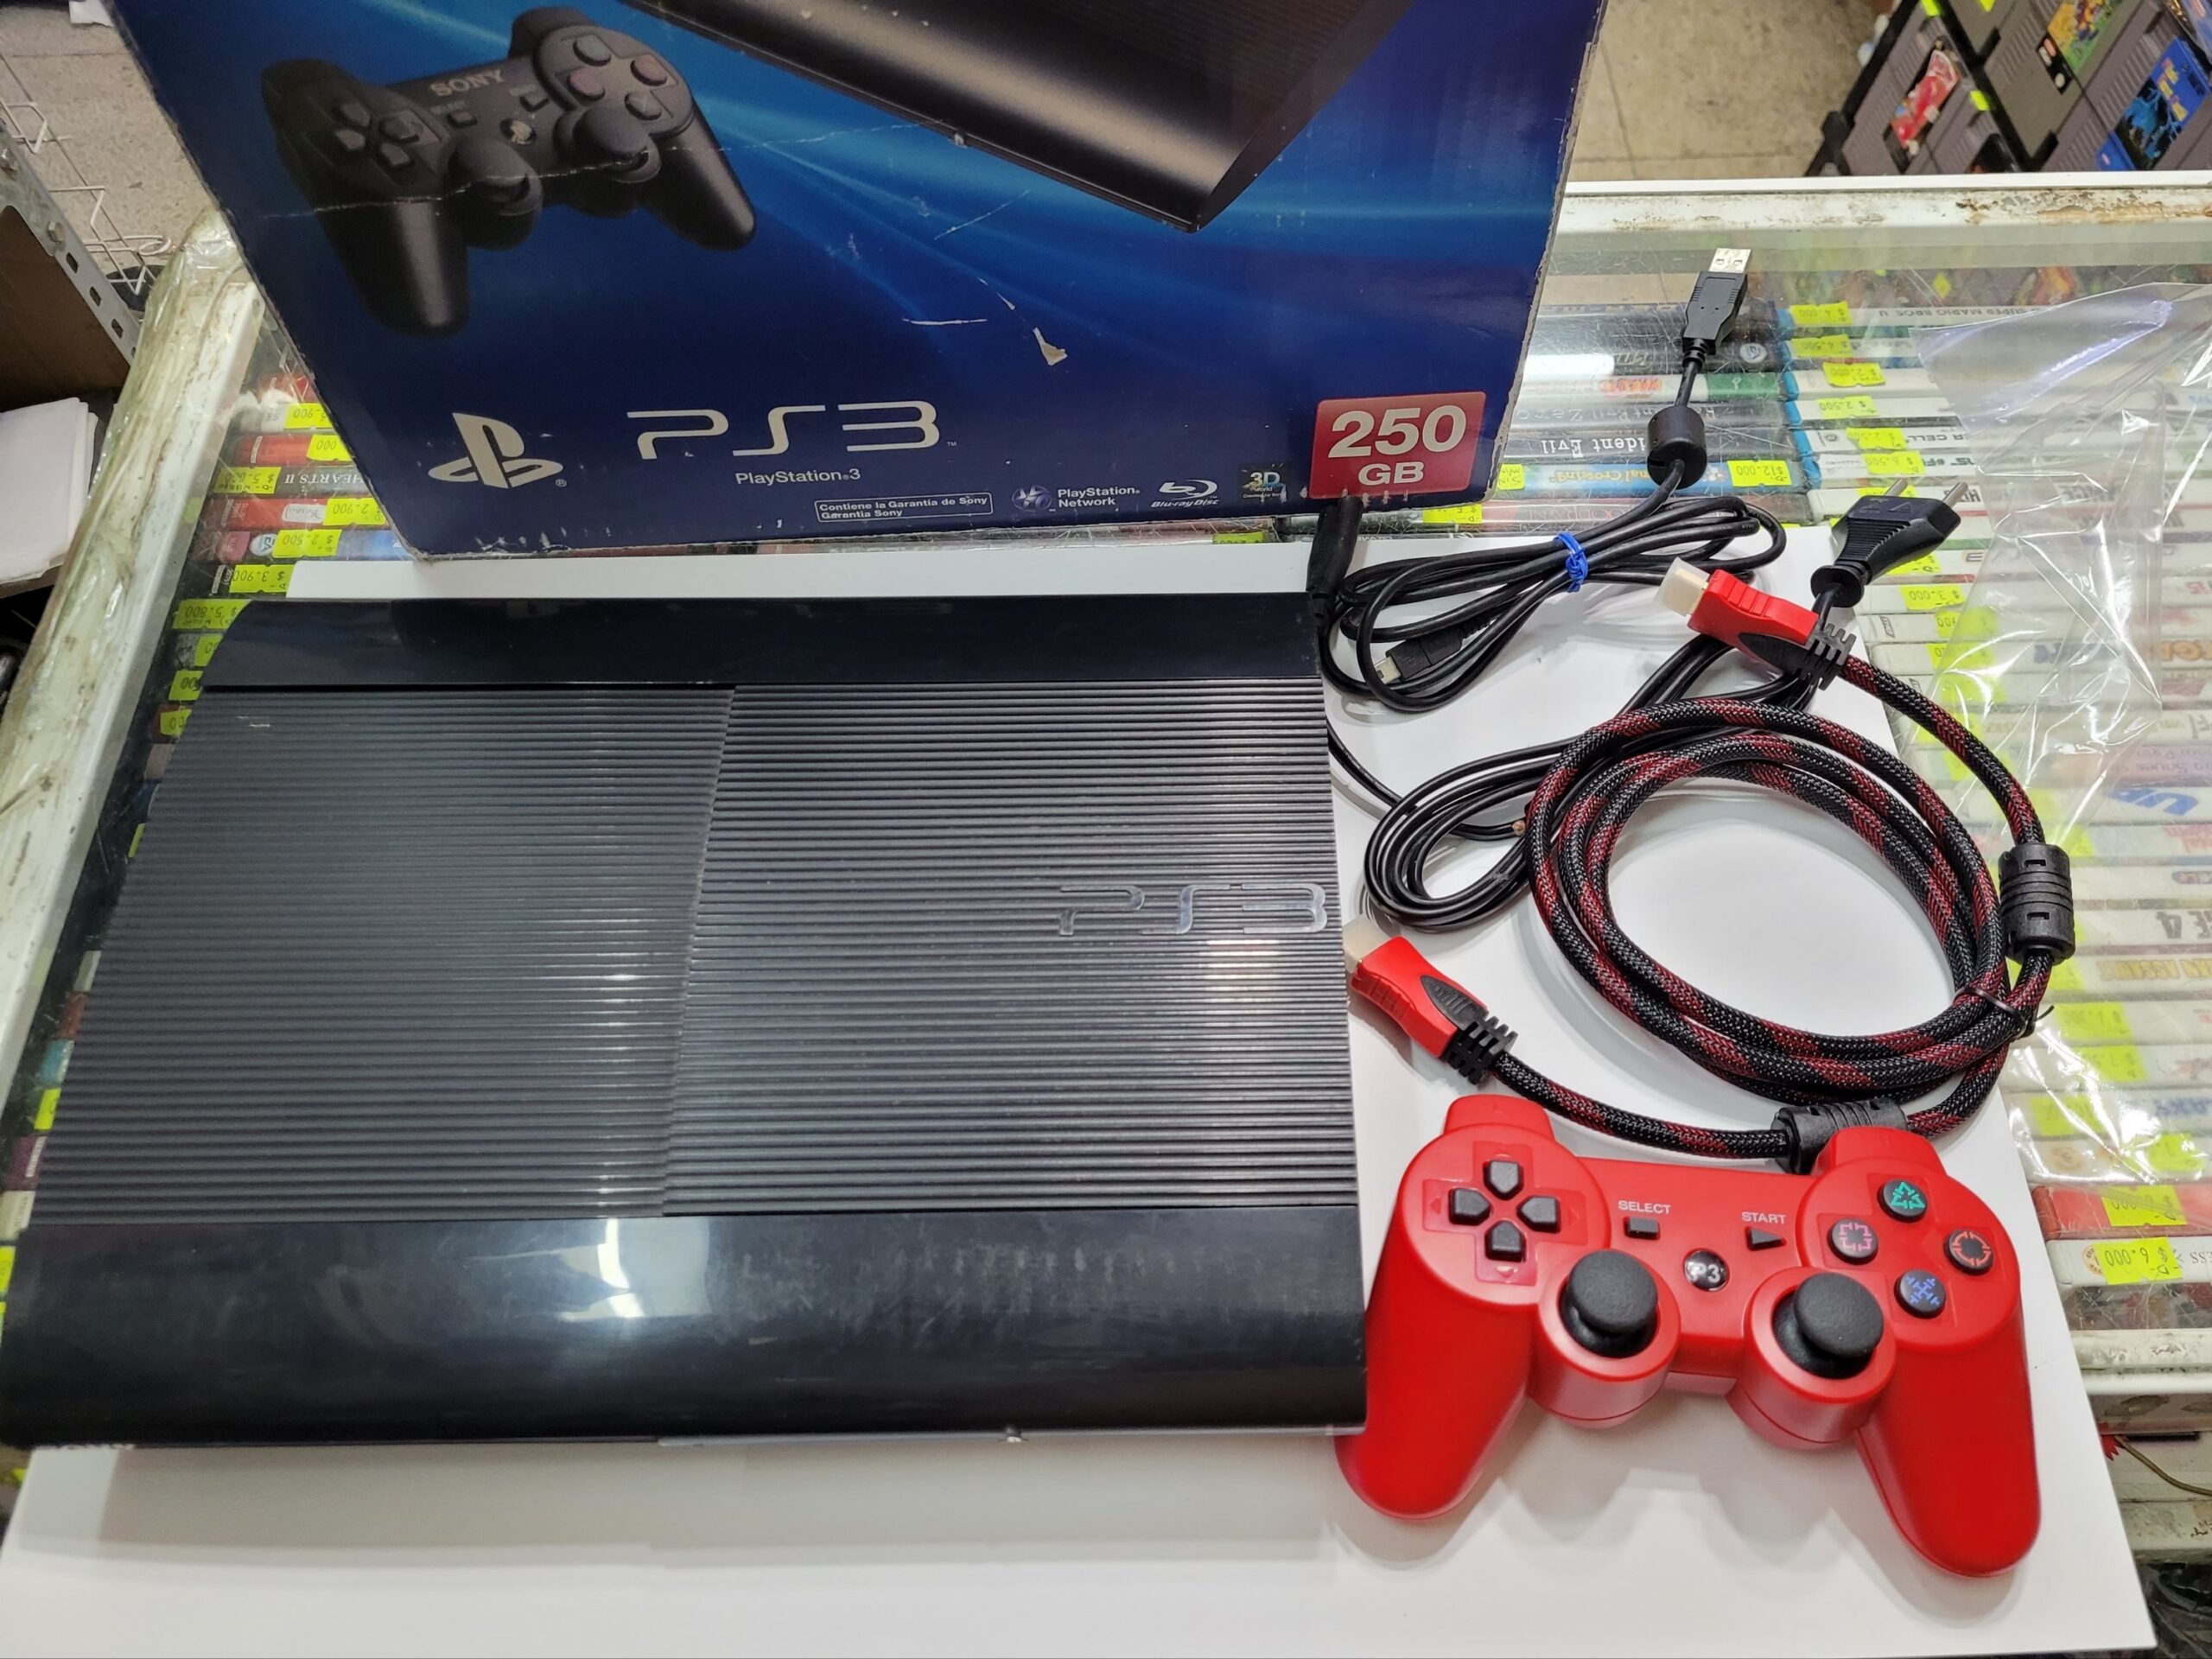 Consola Playstation 3 Slim 500gb + Juegos Con Accesorios